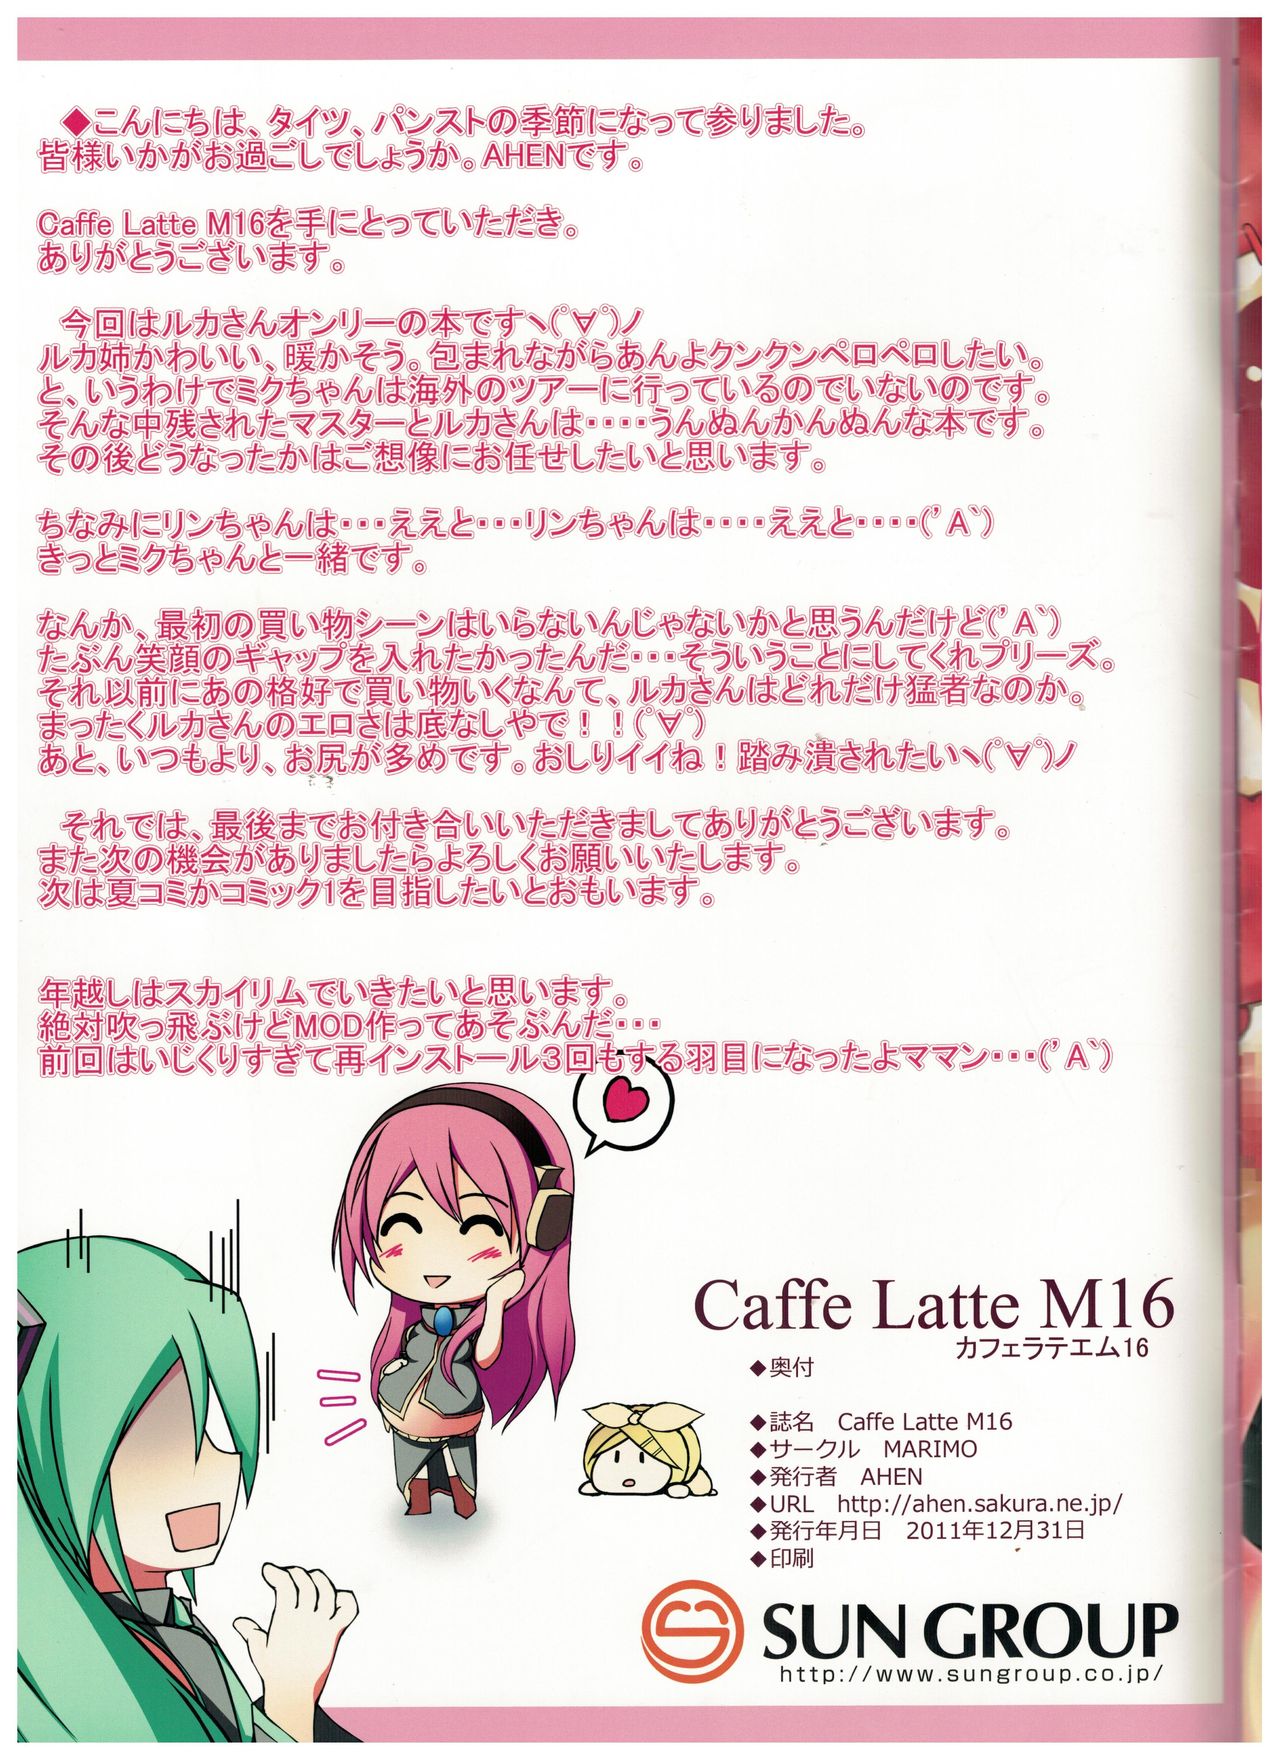 [MARIMO (AHEN)] Caffe Latte M16 (VOCALOID)